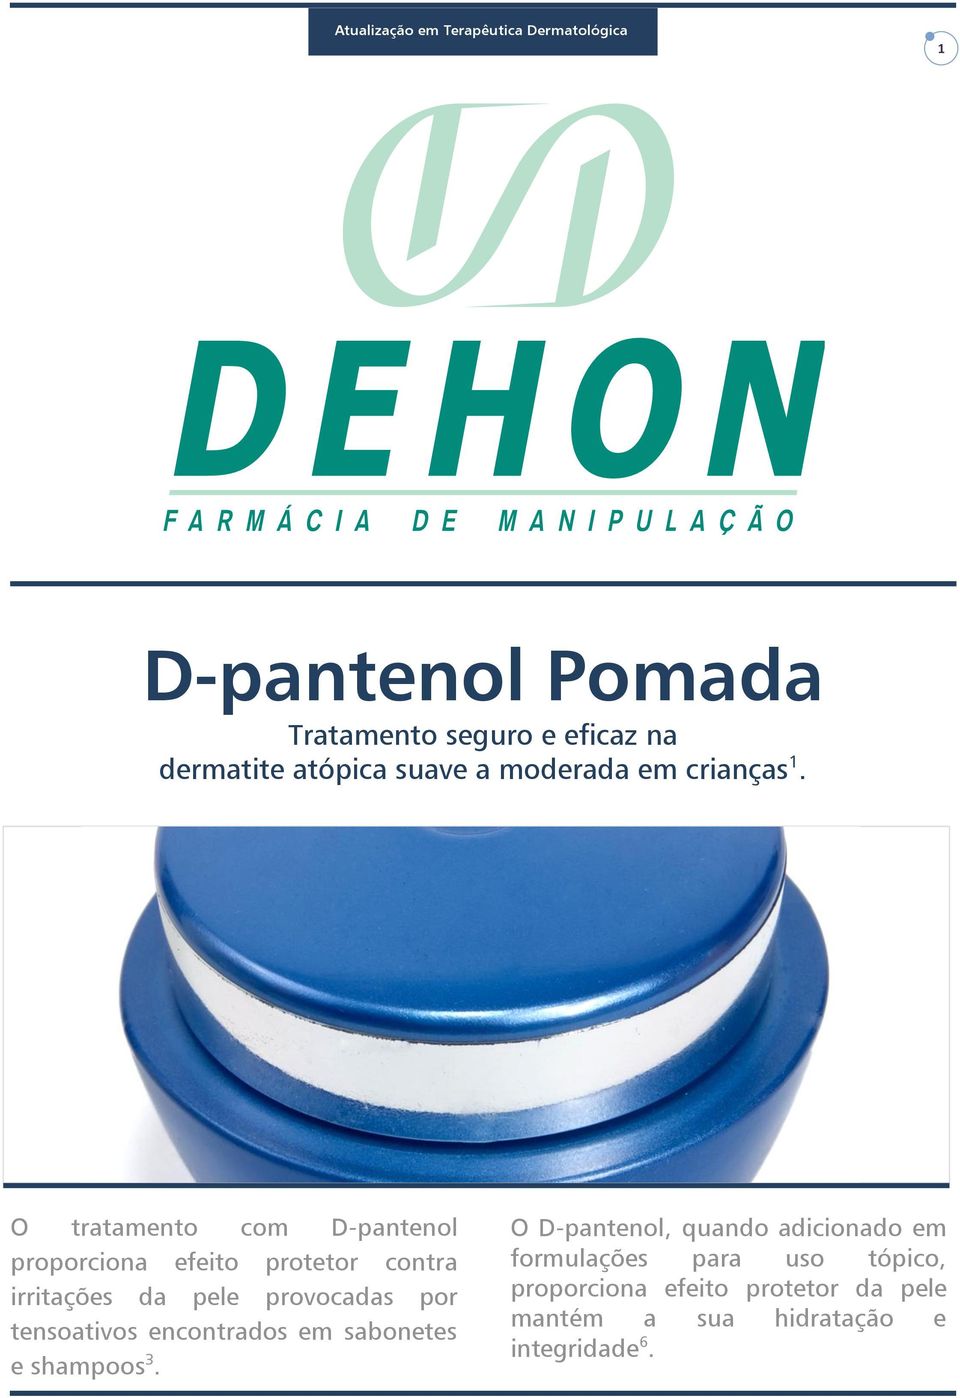 O tratamento com D-pantenol proporciona efeito protetor contra irritações da pele provocadas por